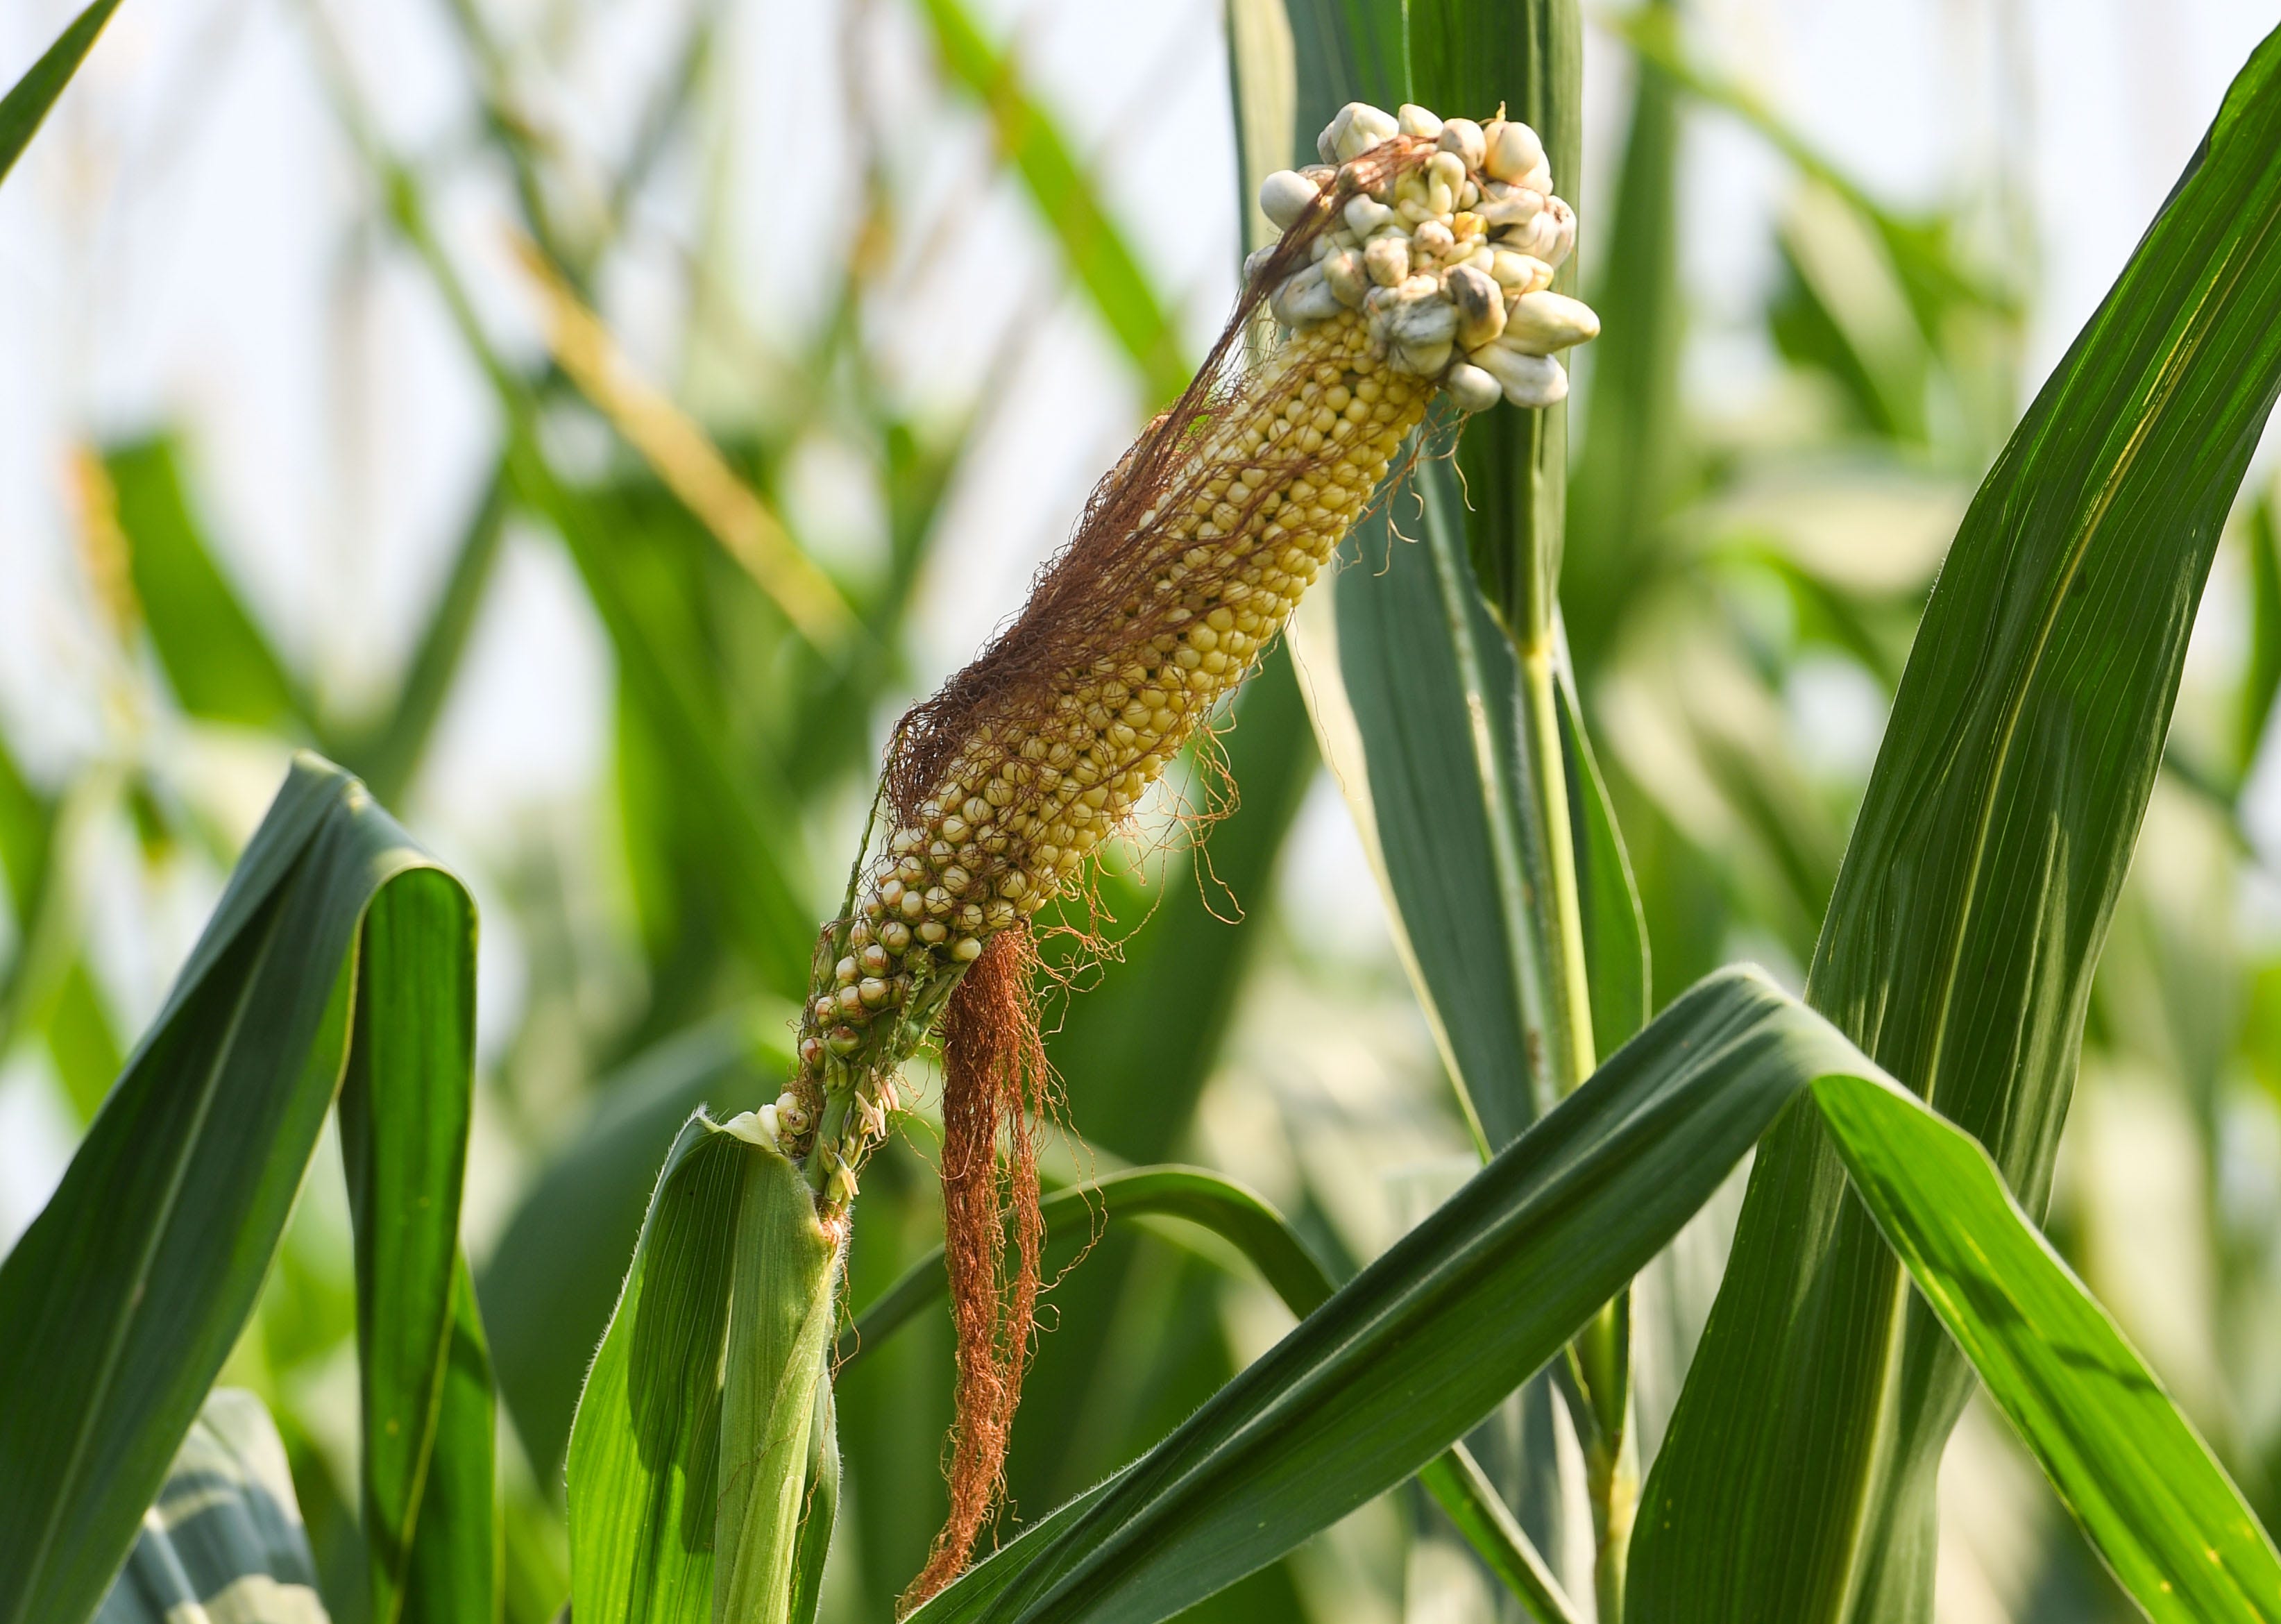 An ear of corn in a field